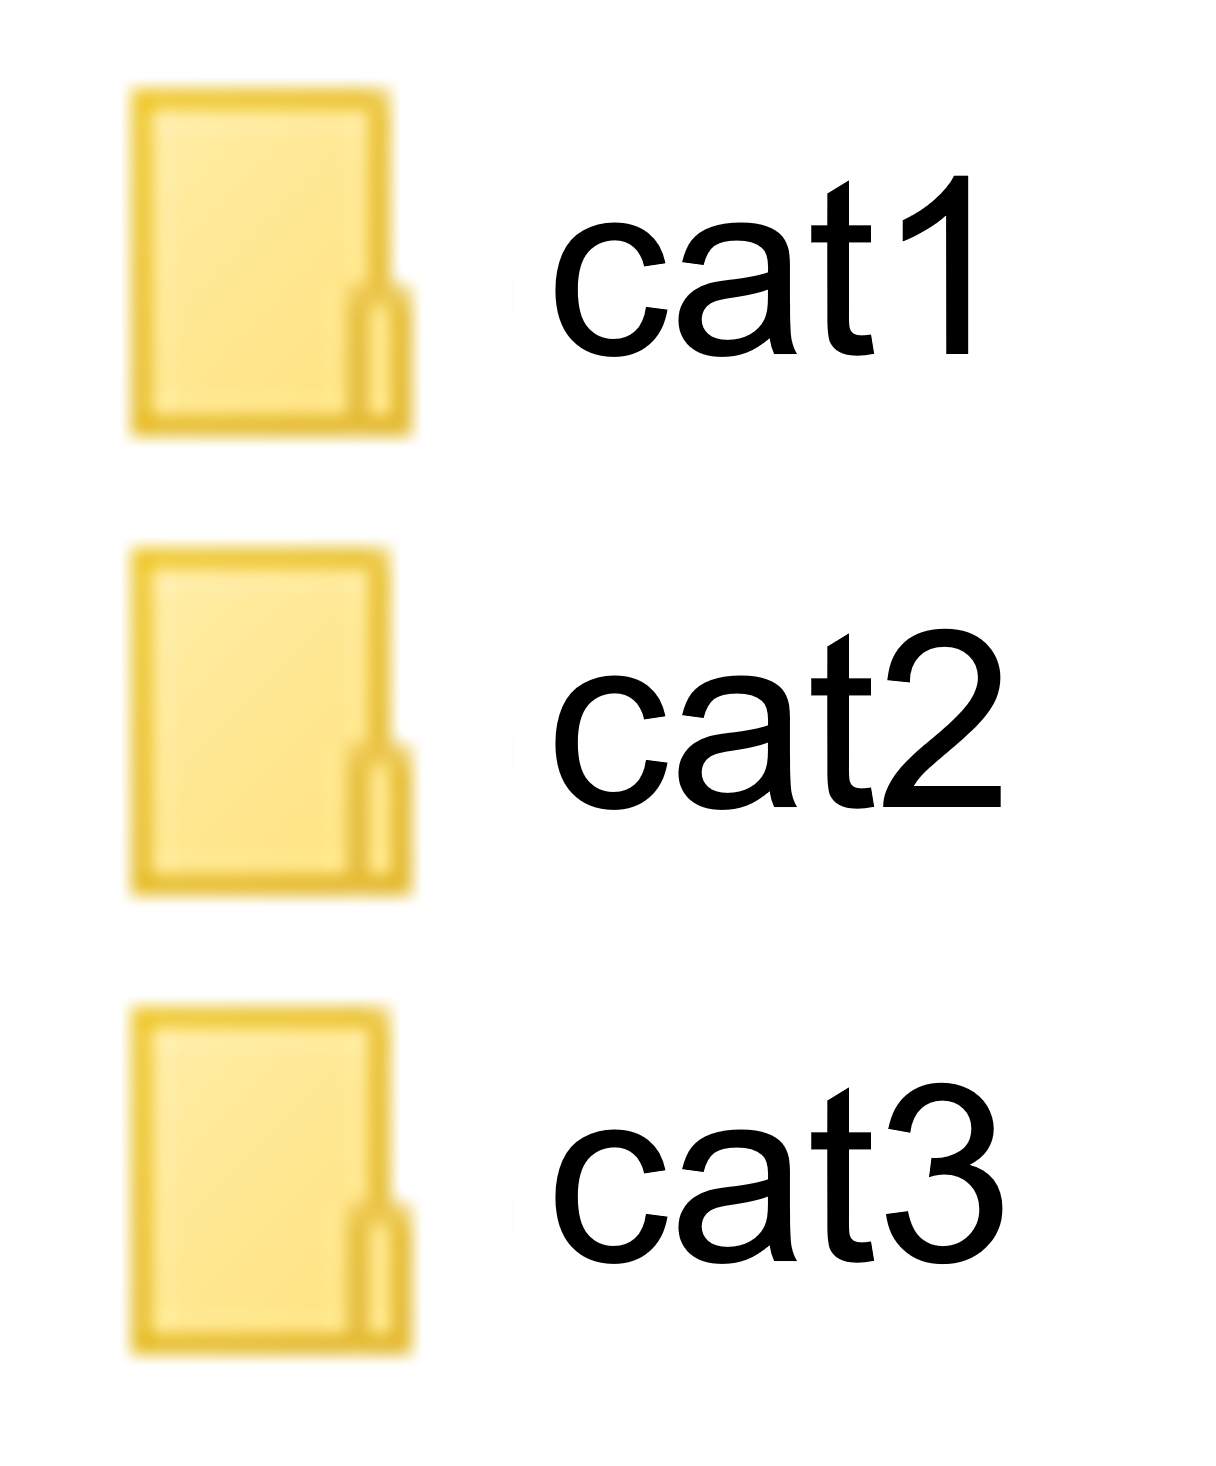 폴더 구조 이미지 폴더 cat1 cat2 cat3 일렬로 나열